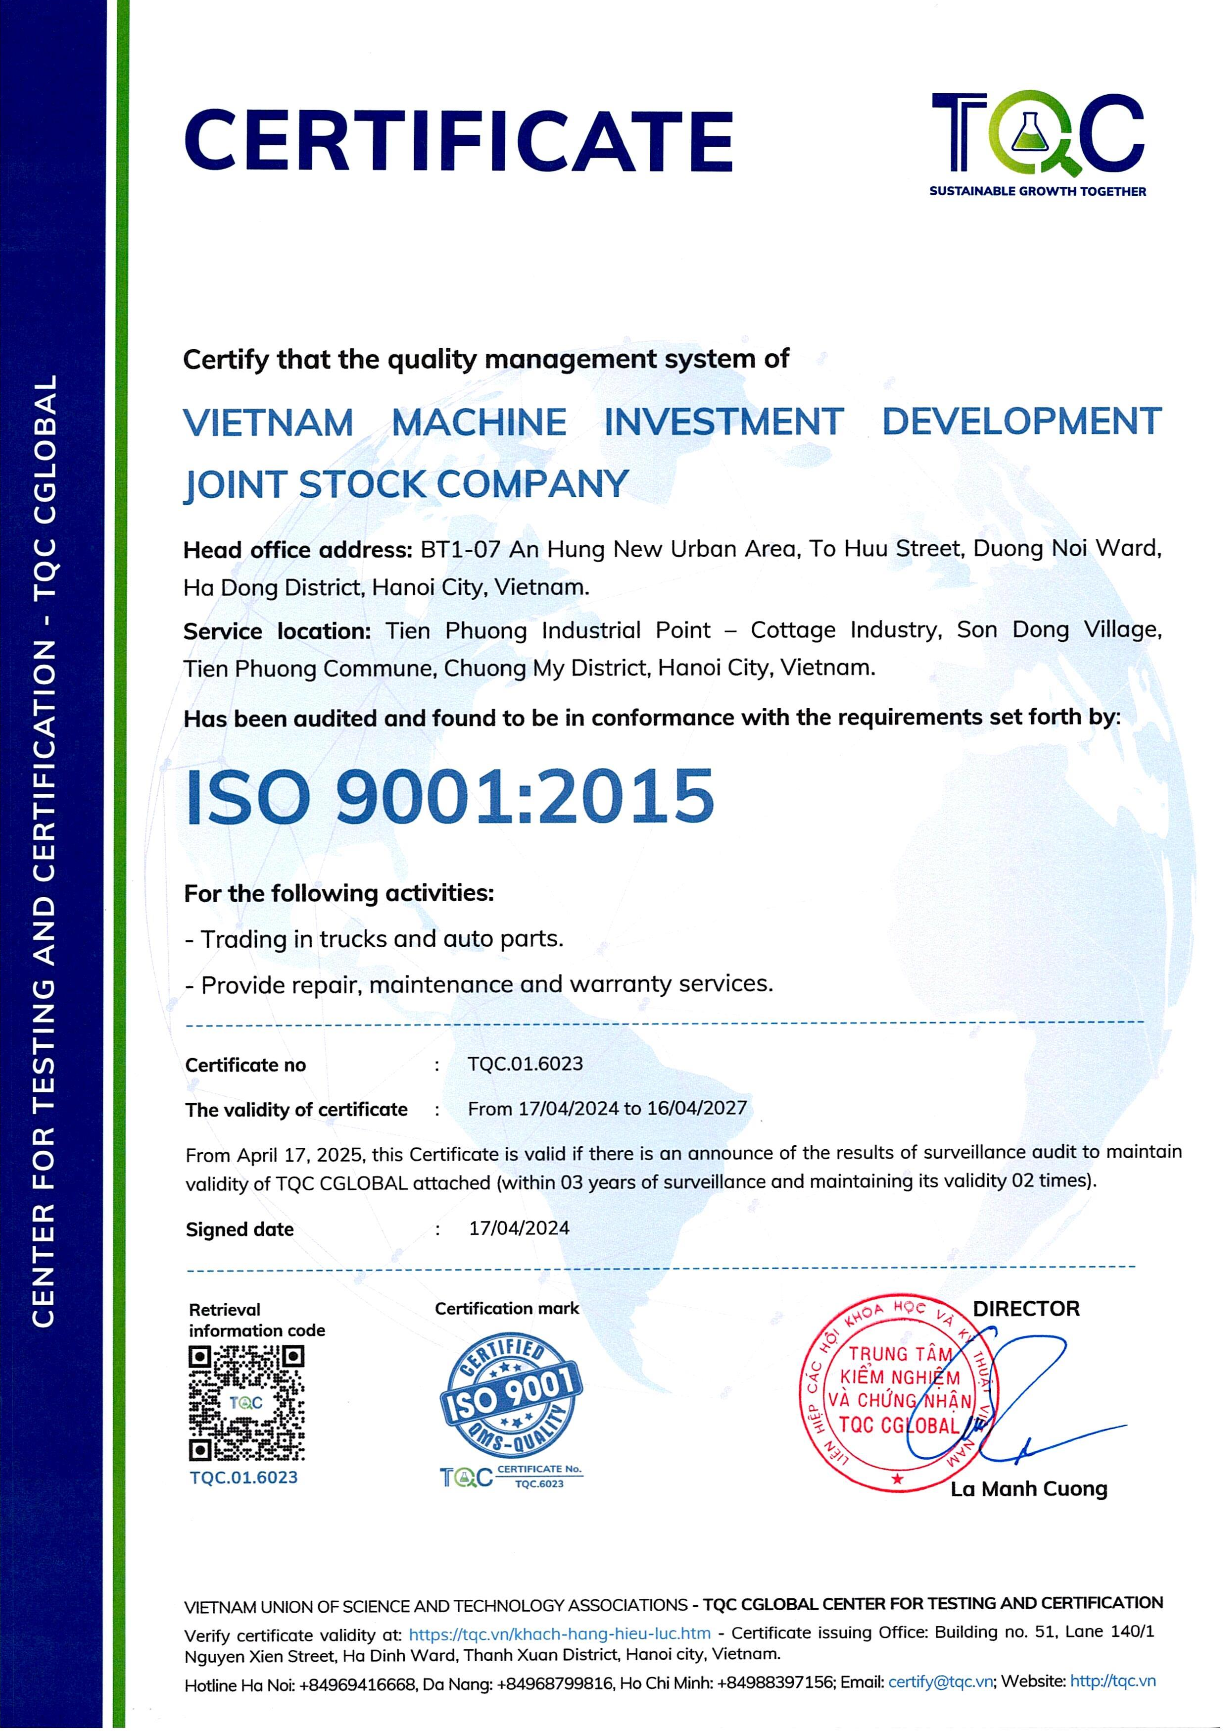 Hình ảnh giấy chứng nhận VIMID đạt tiêu chuẩn ISO 9001:2015 